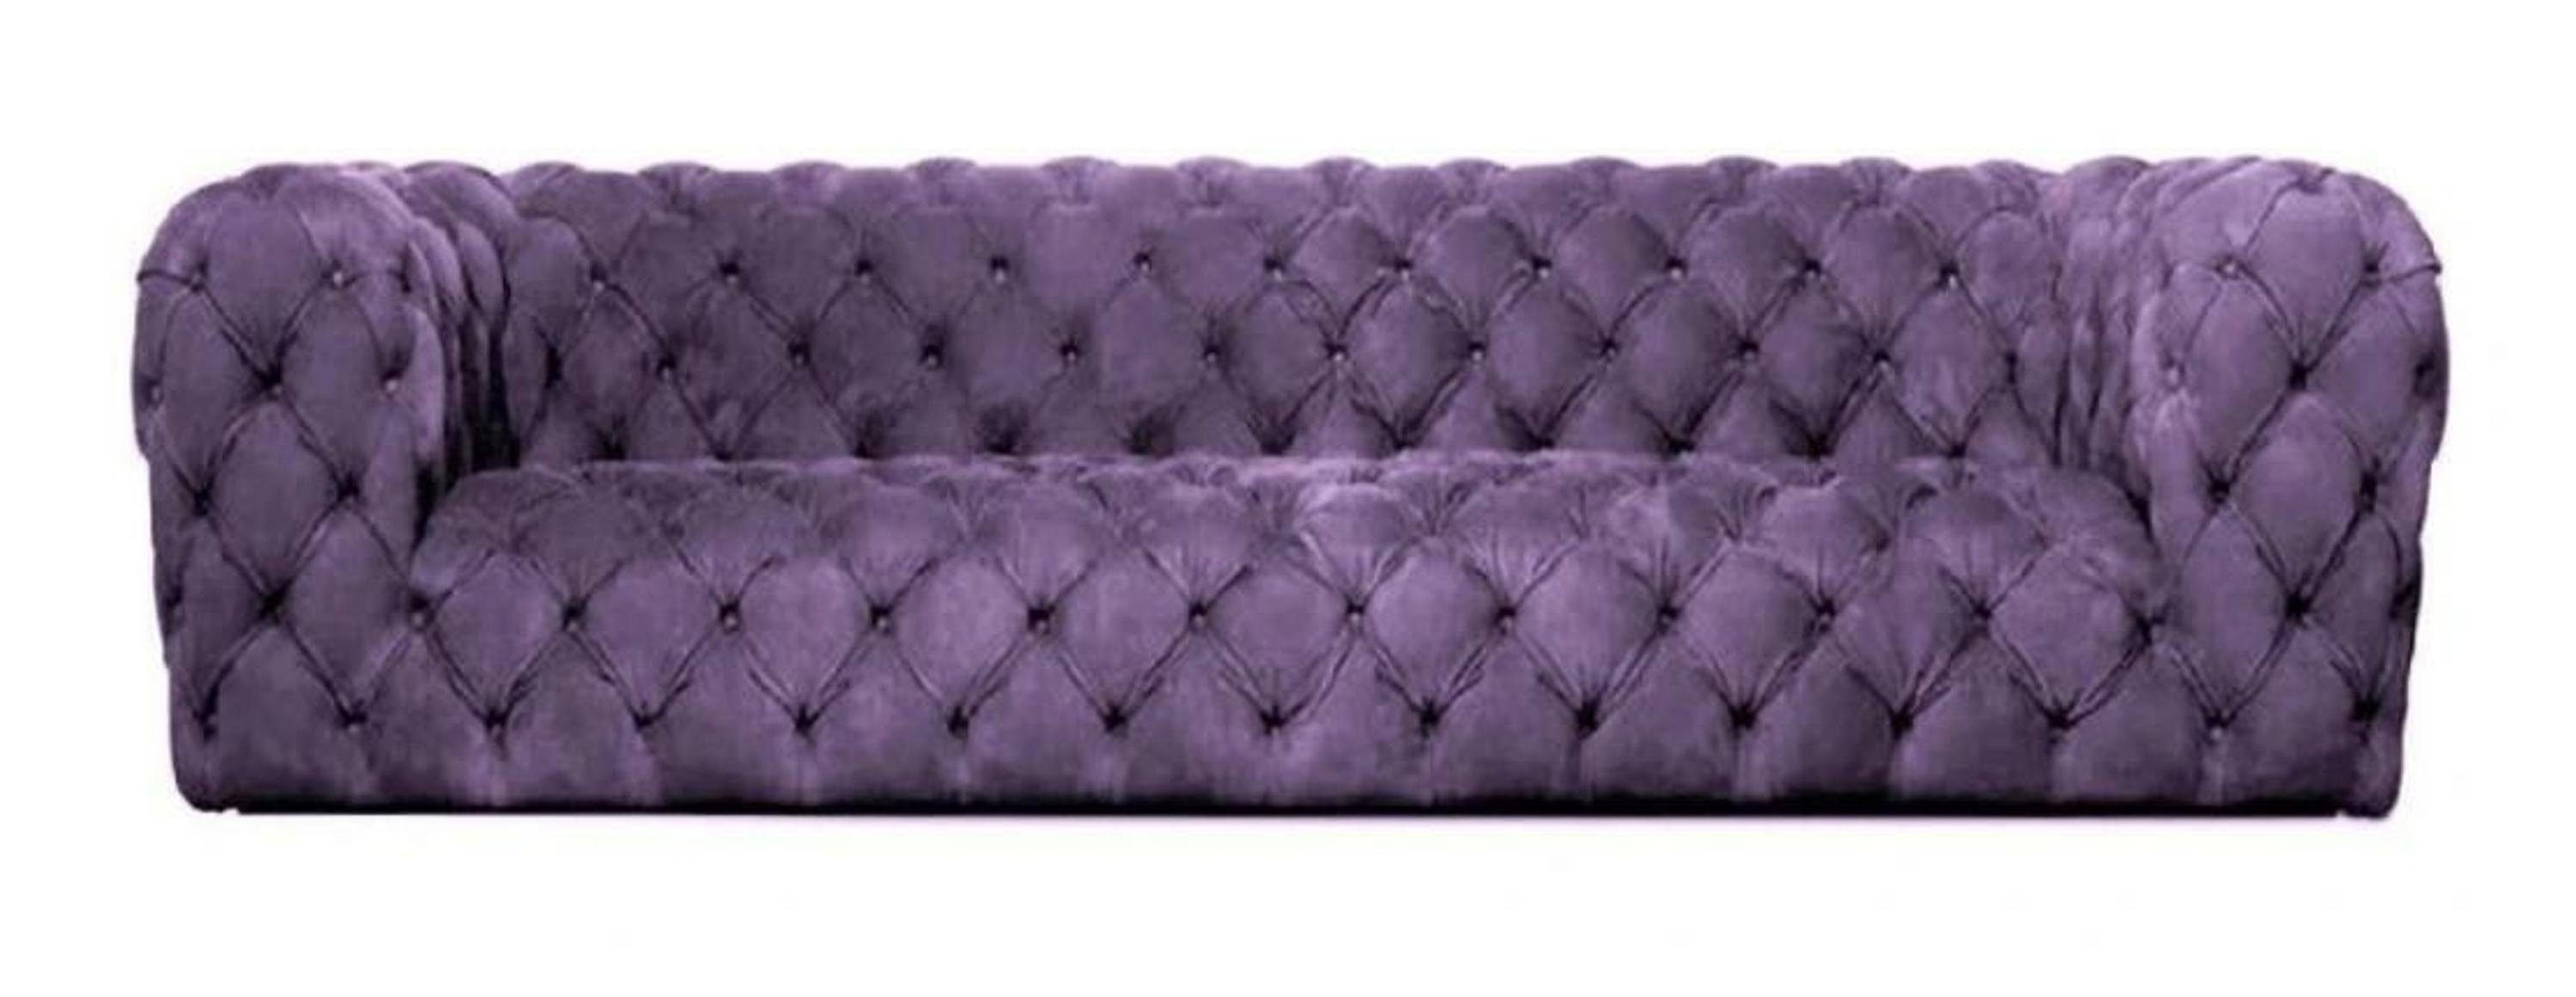 JVmoebel Chesterfield-Sofa, Gelbe Chesterfield Couch Viersitzer xxl big sofa gemütliche Lila